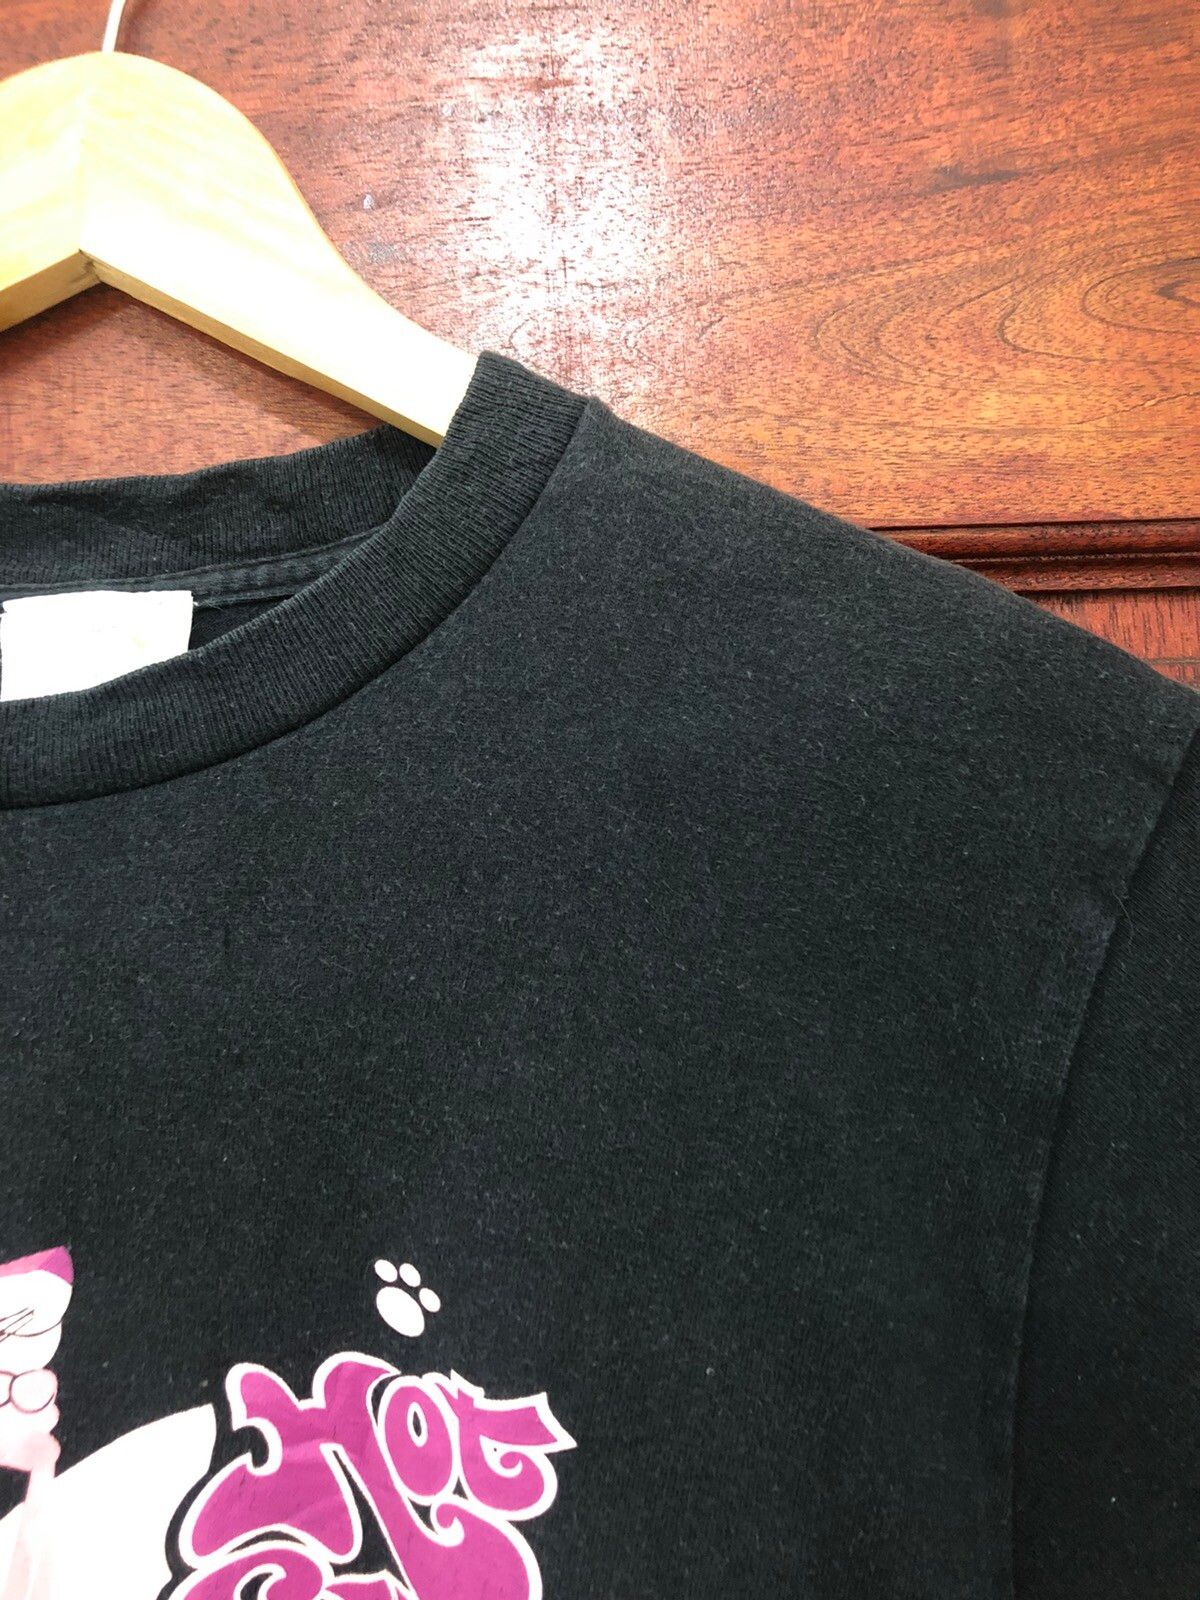 Japanese Brand Vintage Pink Panther Hot Sweet Japan Made TShirt Size US S / EU 44-46 / 1 - 5 Thumbnail